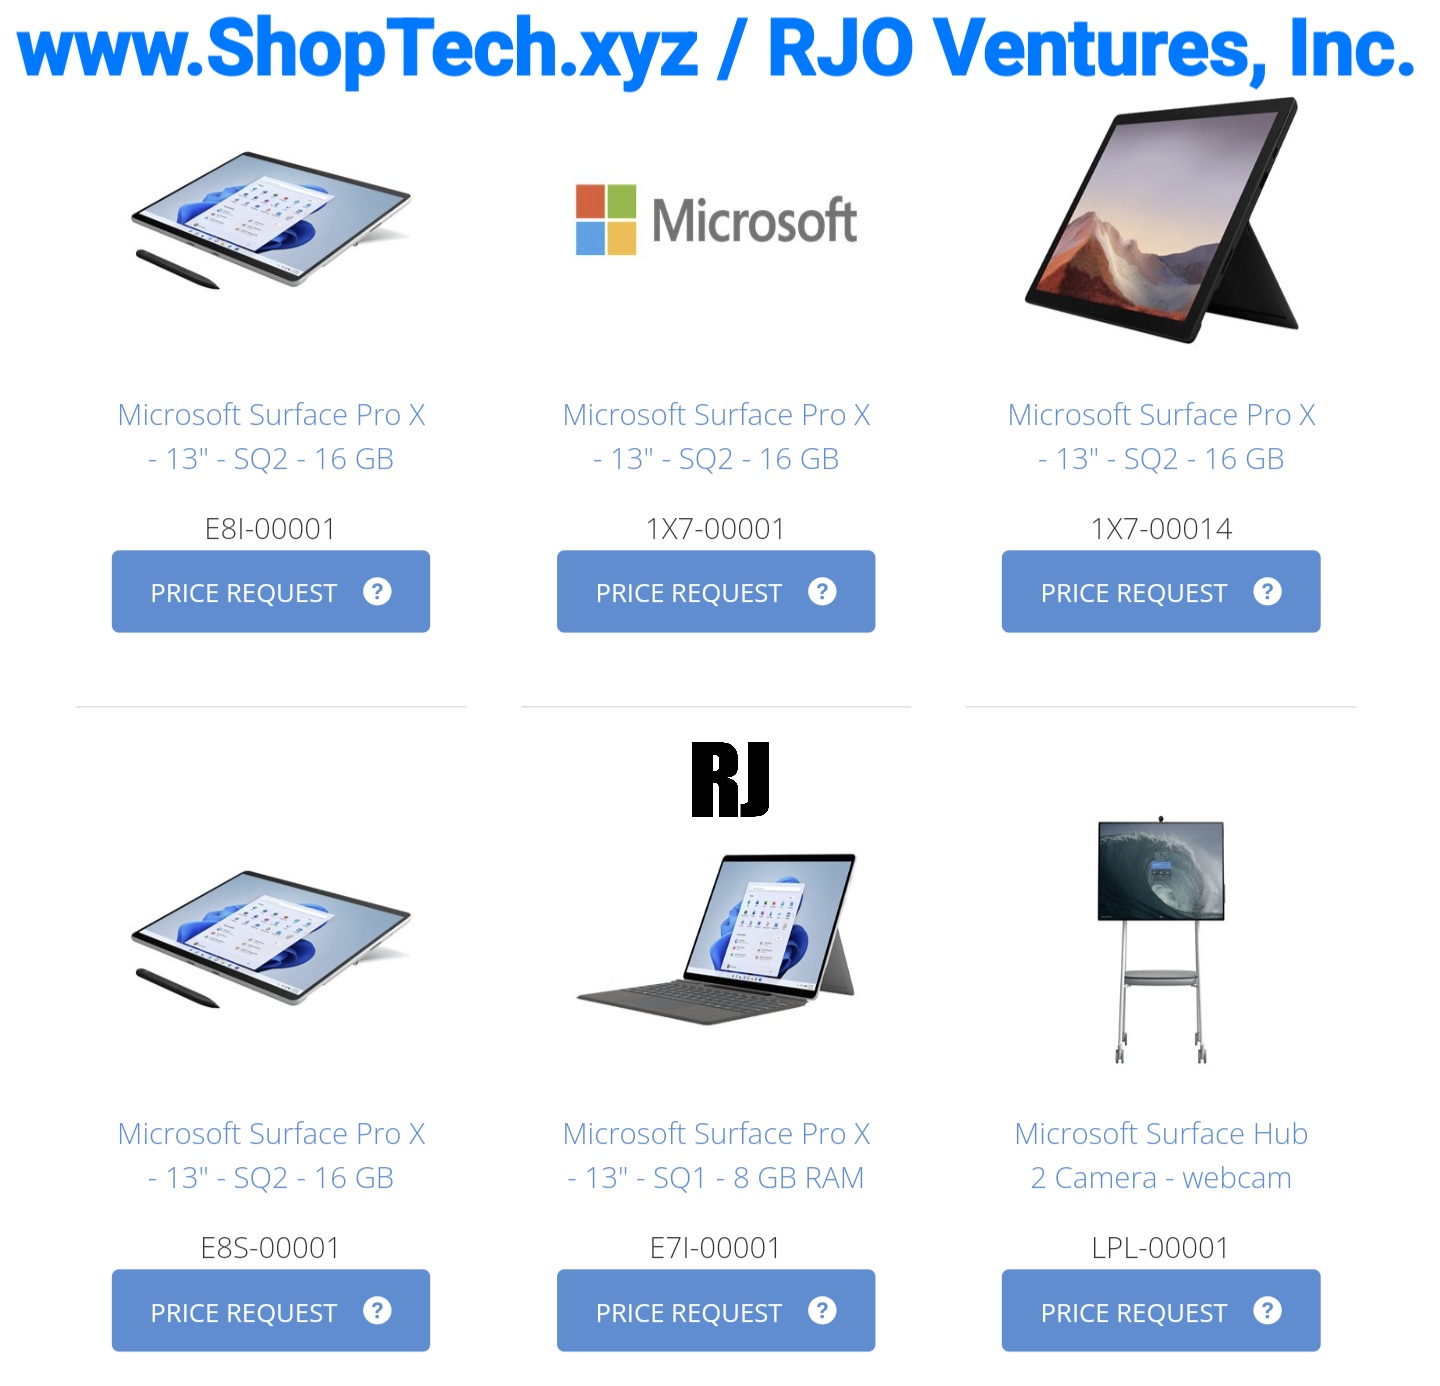 www.ShopTech.xyz; Powered by: RJO Ventures, Inc.